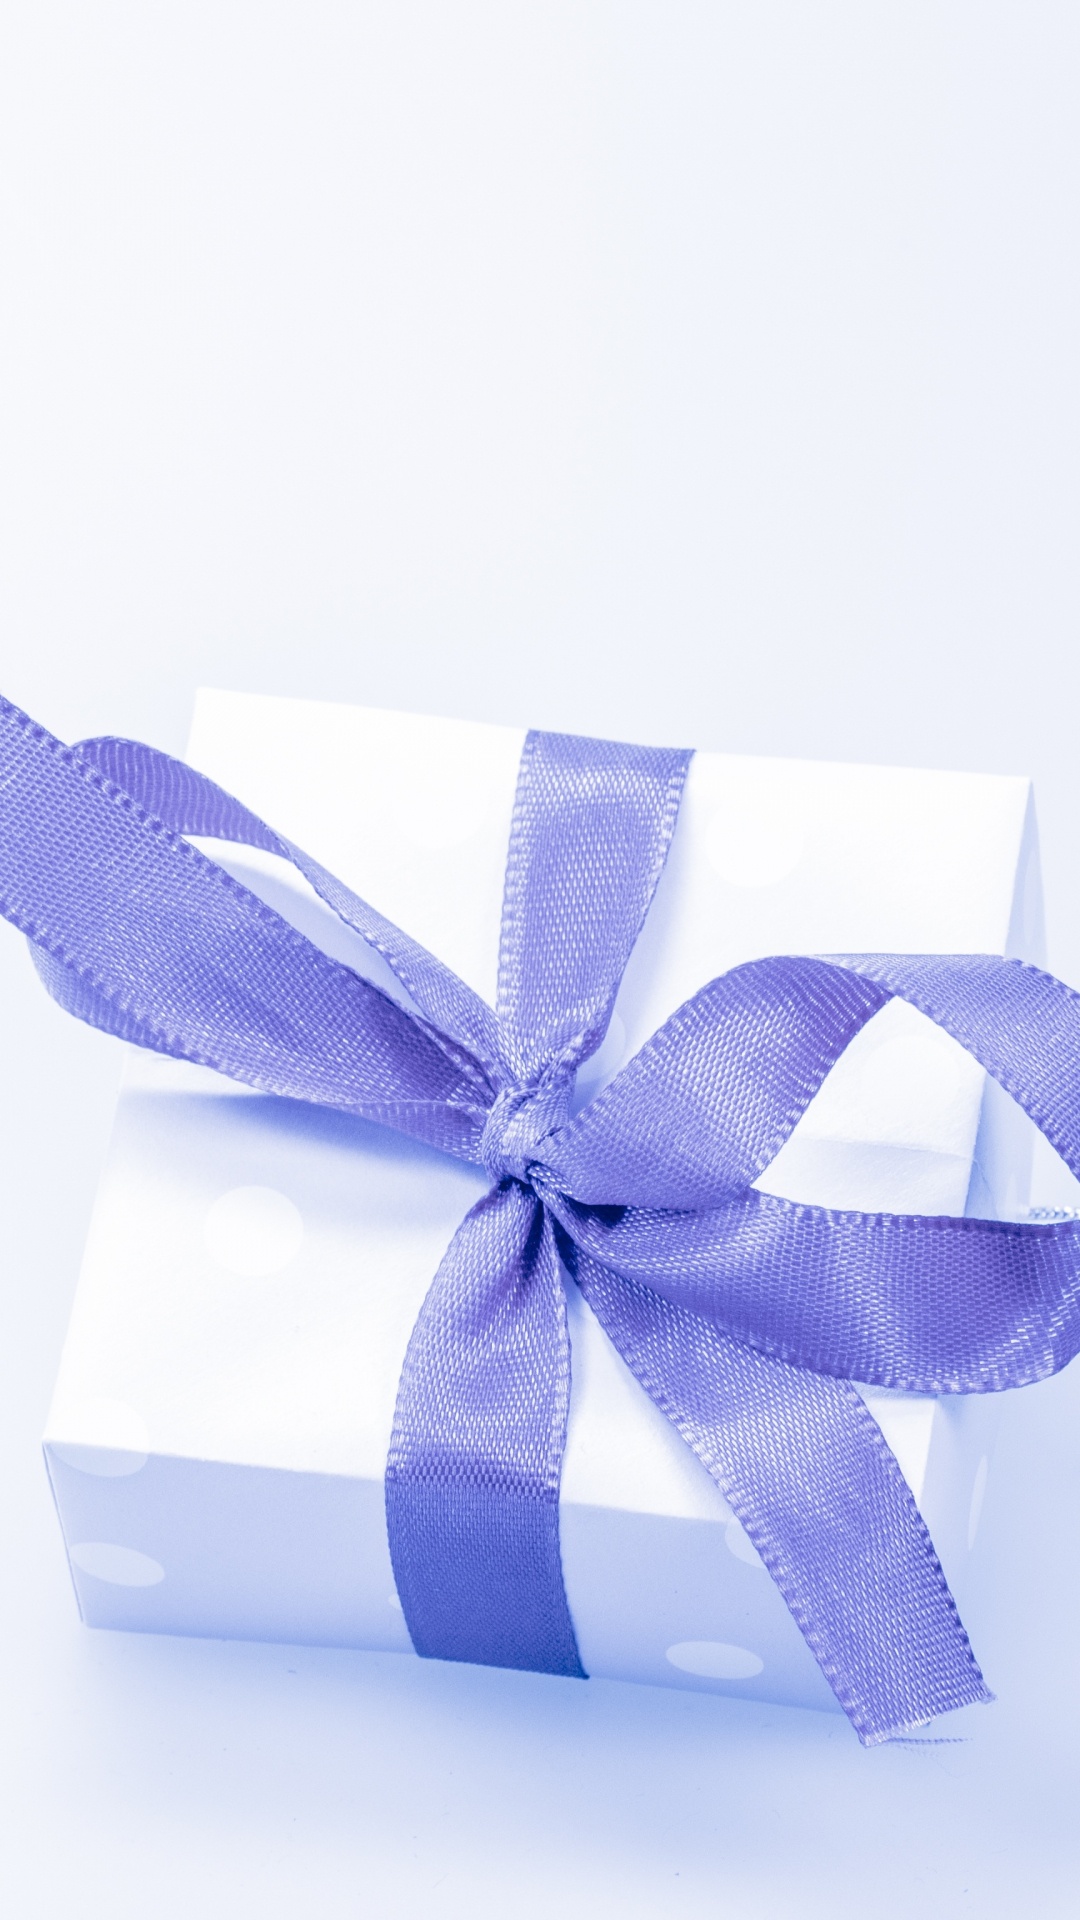 礼物, 礼品卡, 礼品包装, 丝带, 紫罗兰色 壁纸 1080x1920 允许